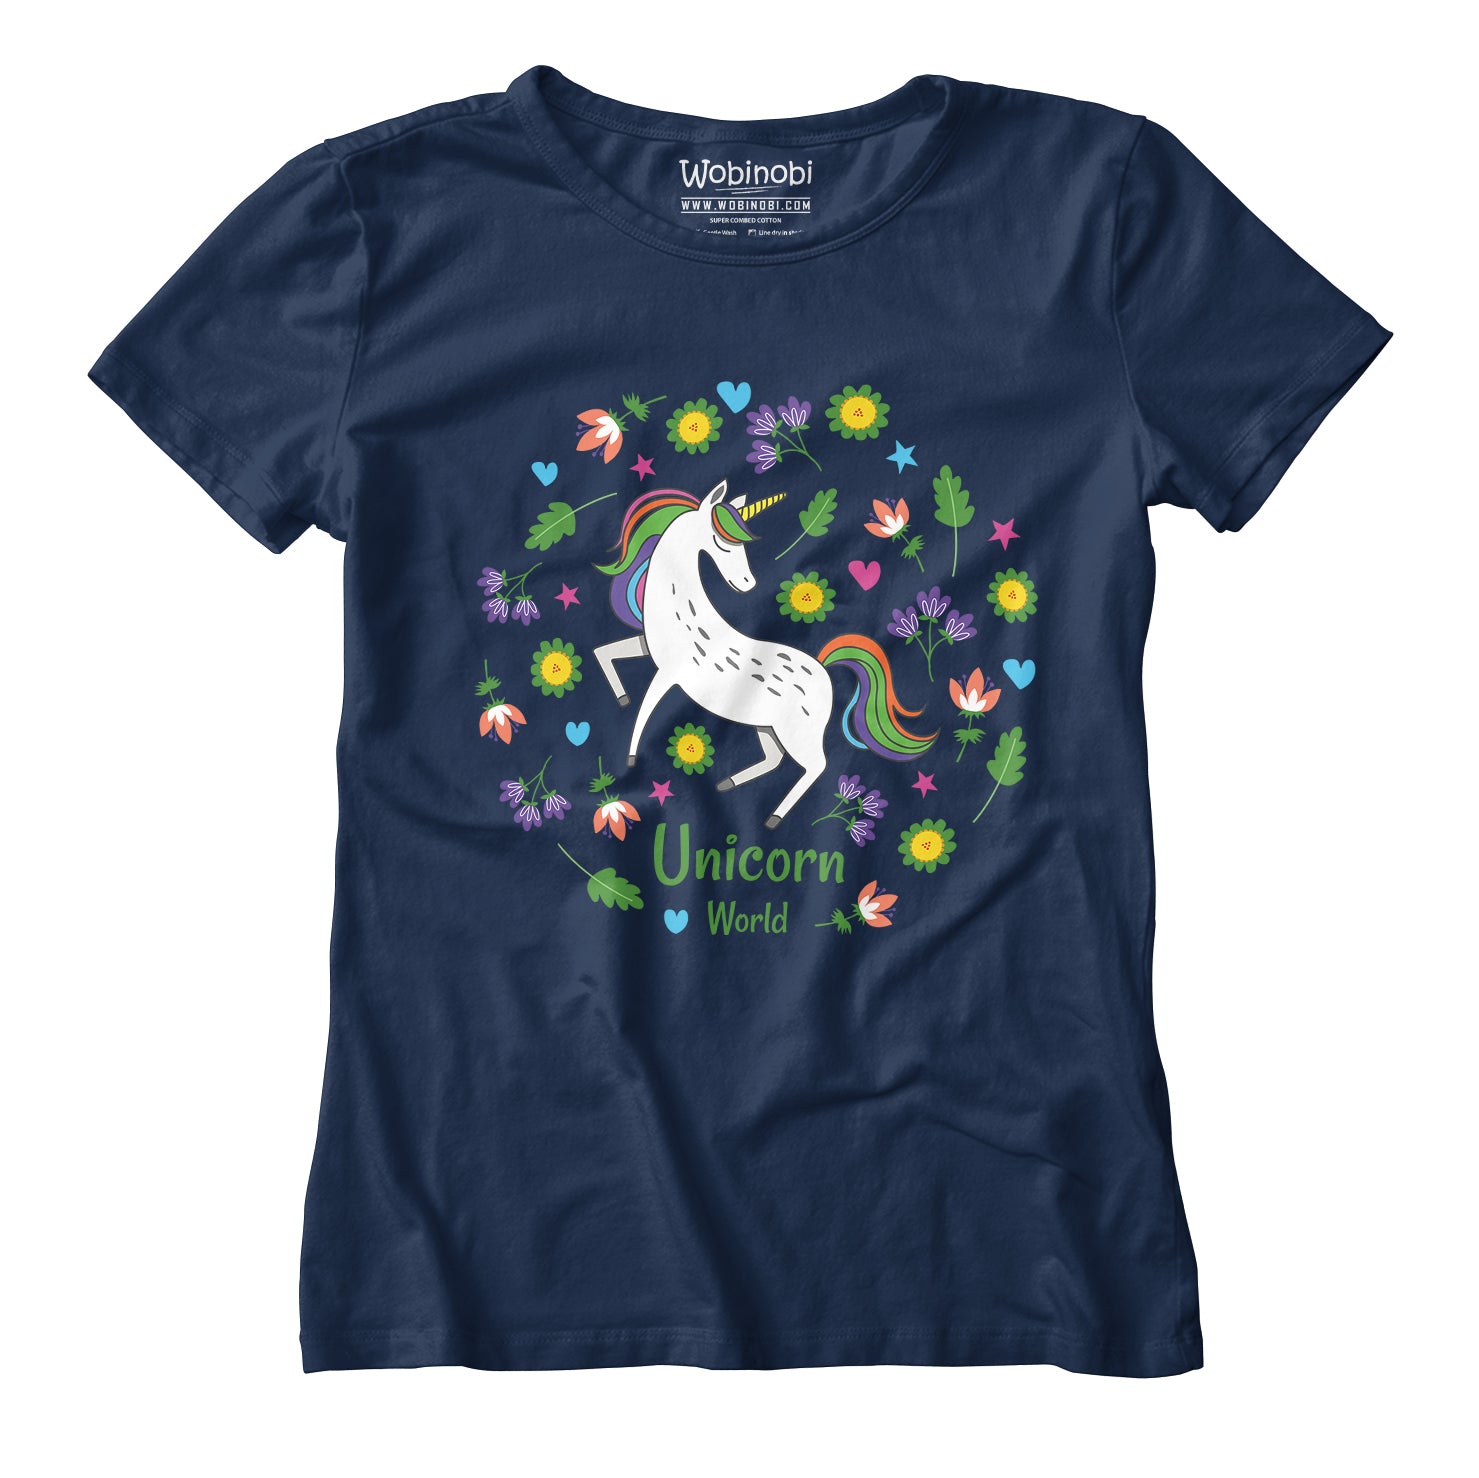 Wobinobi Unicorn World – Cotton Girls T-Shirt 100